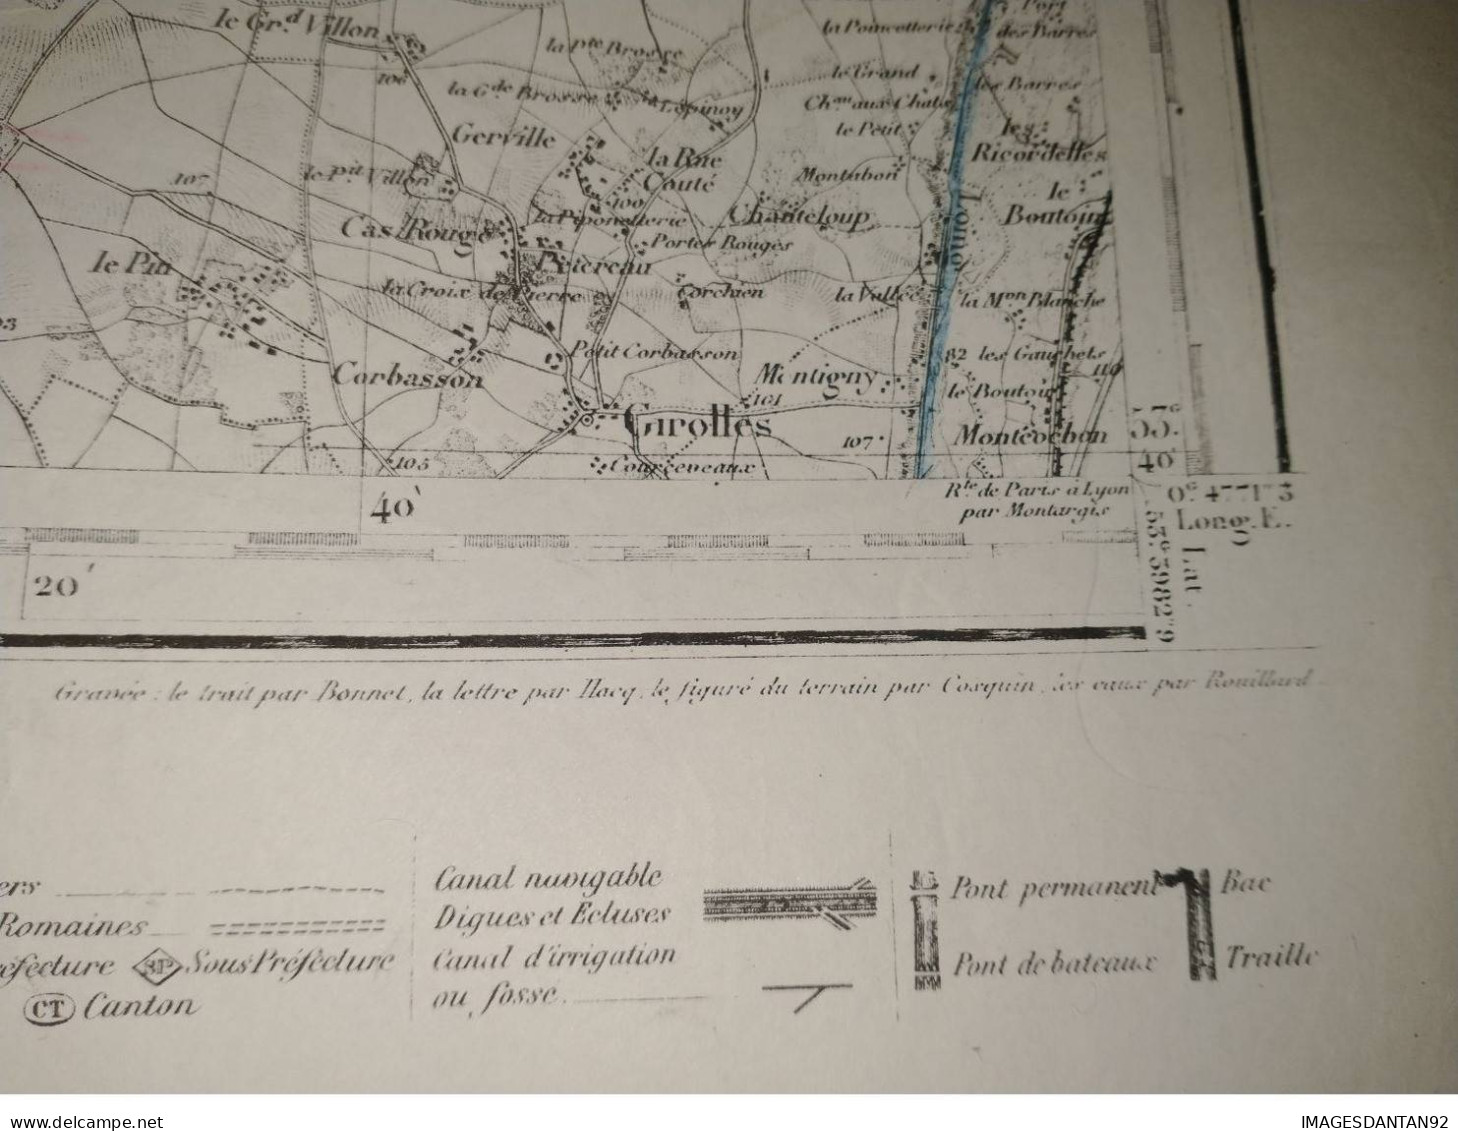 77 FONTAINEBLEAU GRAND PLAN DE 1886 LEVEE PAR OFFICIERS CORPS D ETAT MAJOR DE 1839  CACHET STEAM YACHT DAUPHIN CAPITAINE